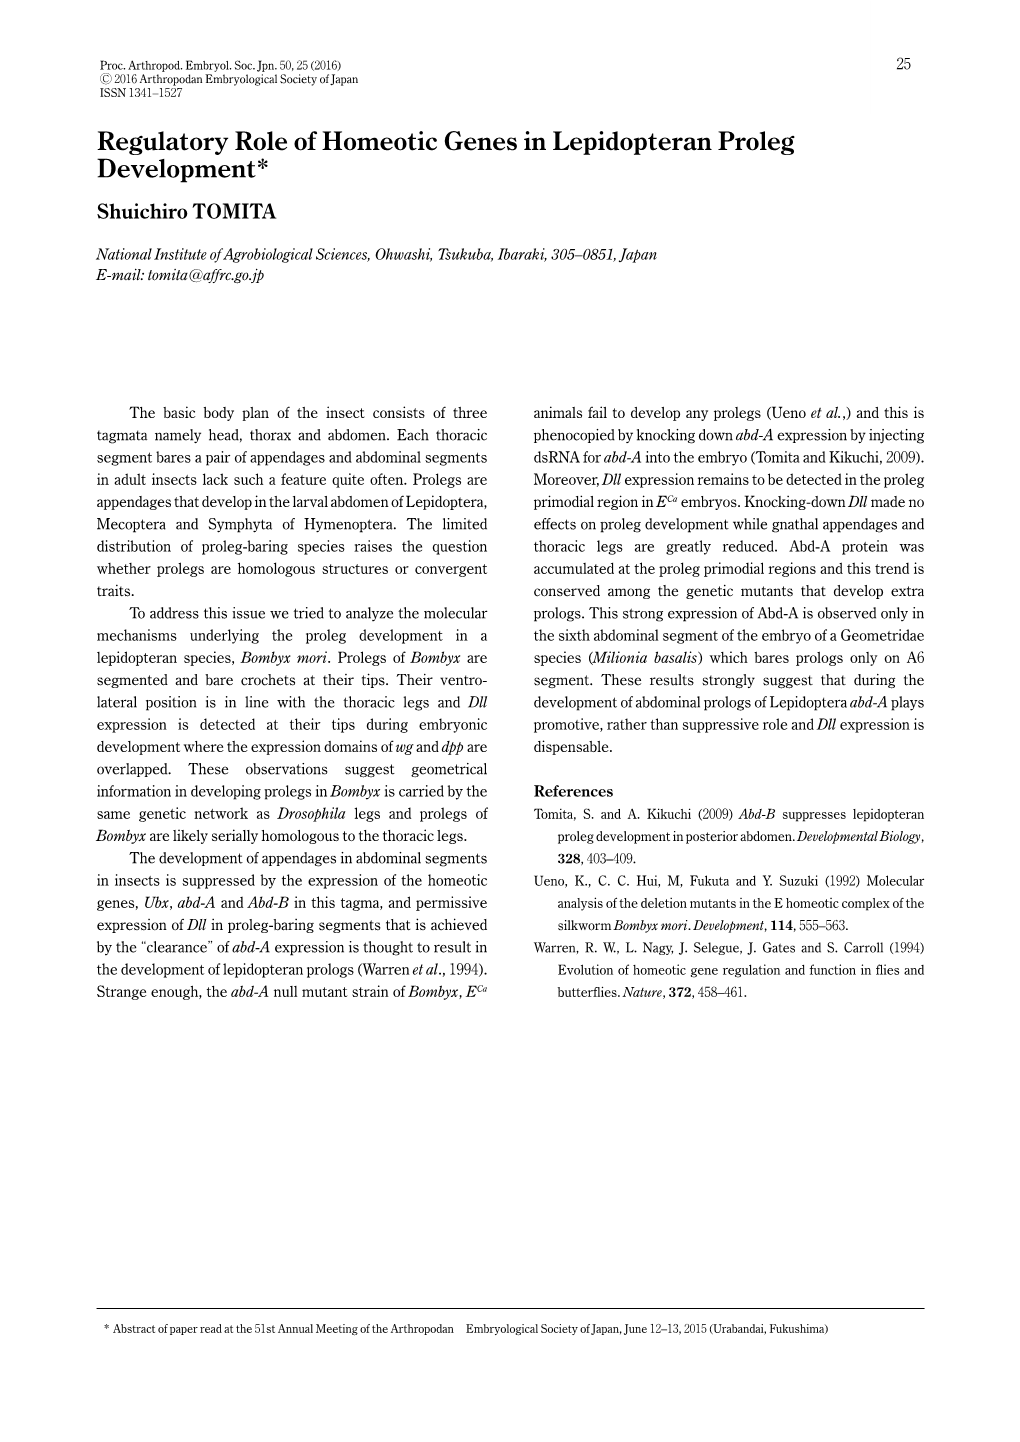 Regulatory Role of Homeotic Genes in Lepidopteran Proleg Development* Shuichiro TOMITA